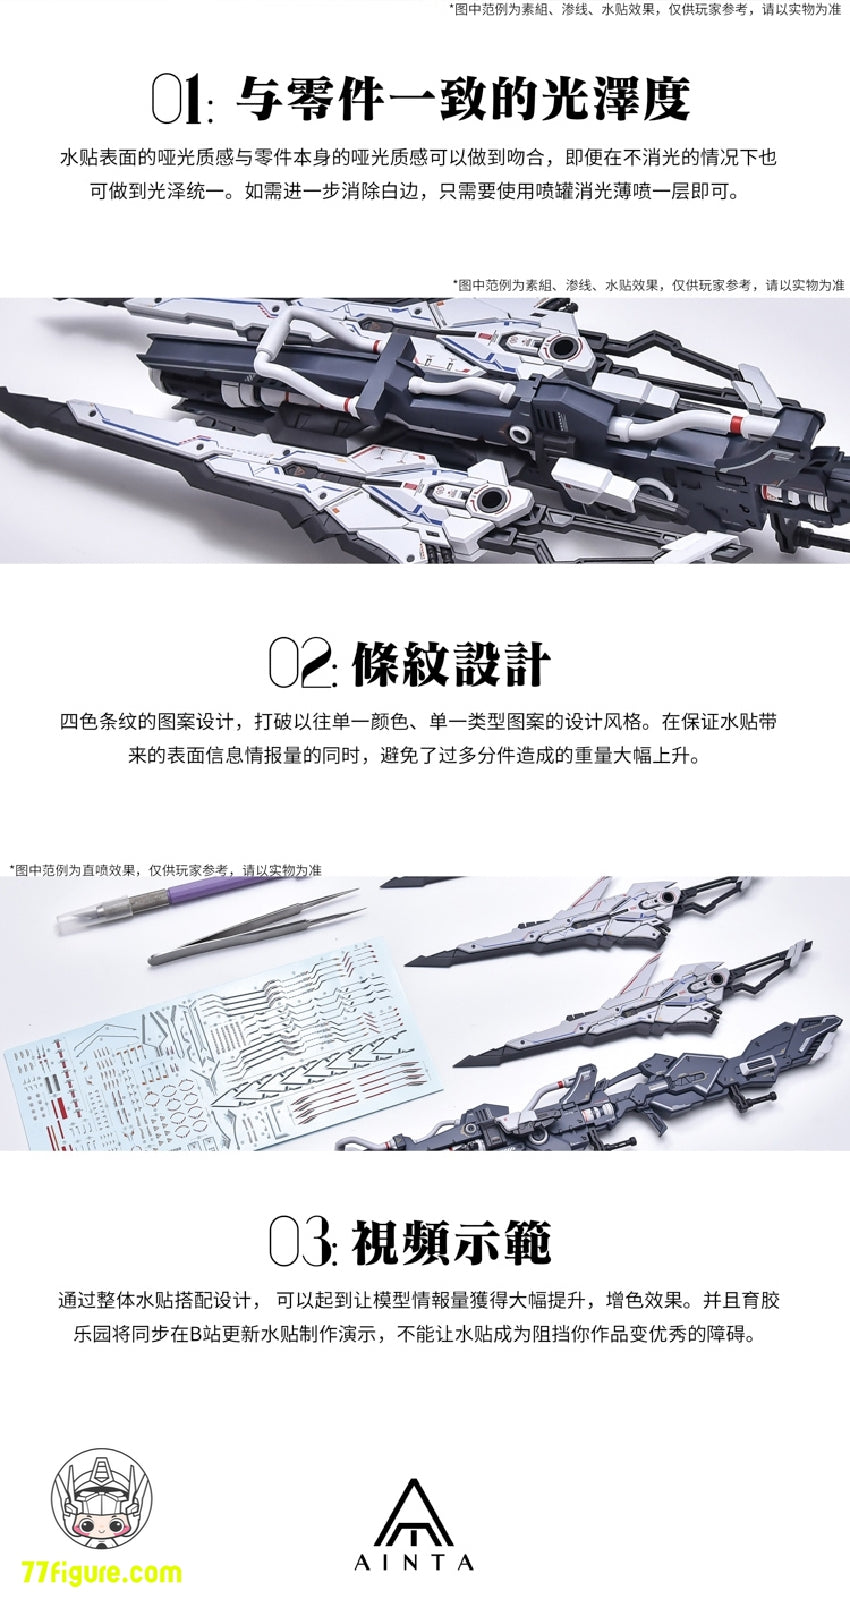 【品切れ】YuJiao Land 1/100 ユニバーサル GWS-01 トライデント武器 プラモデル